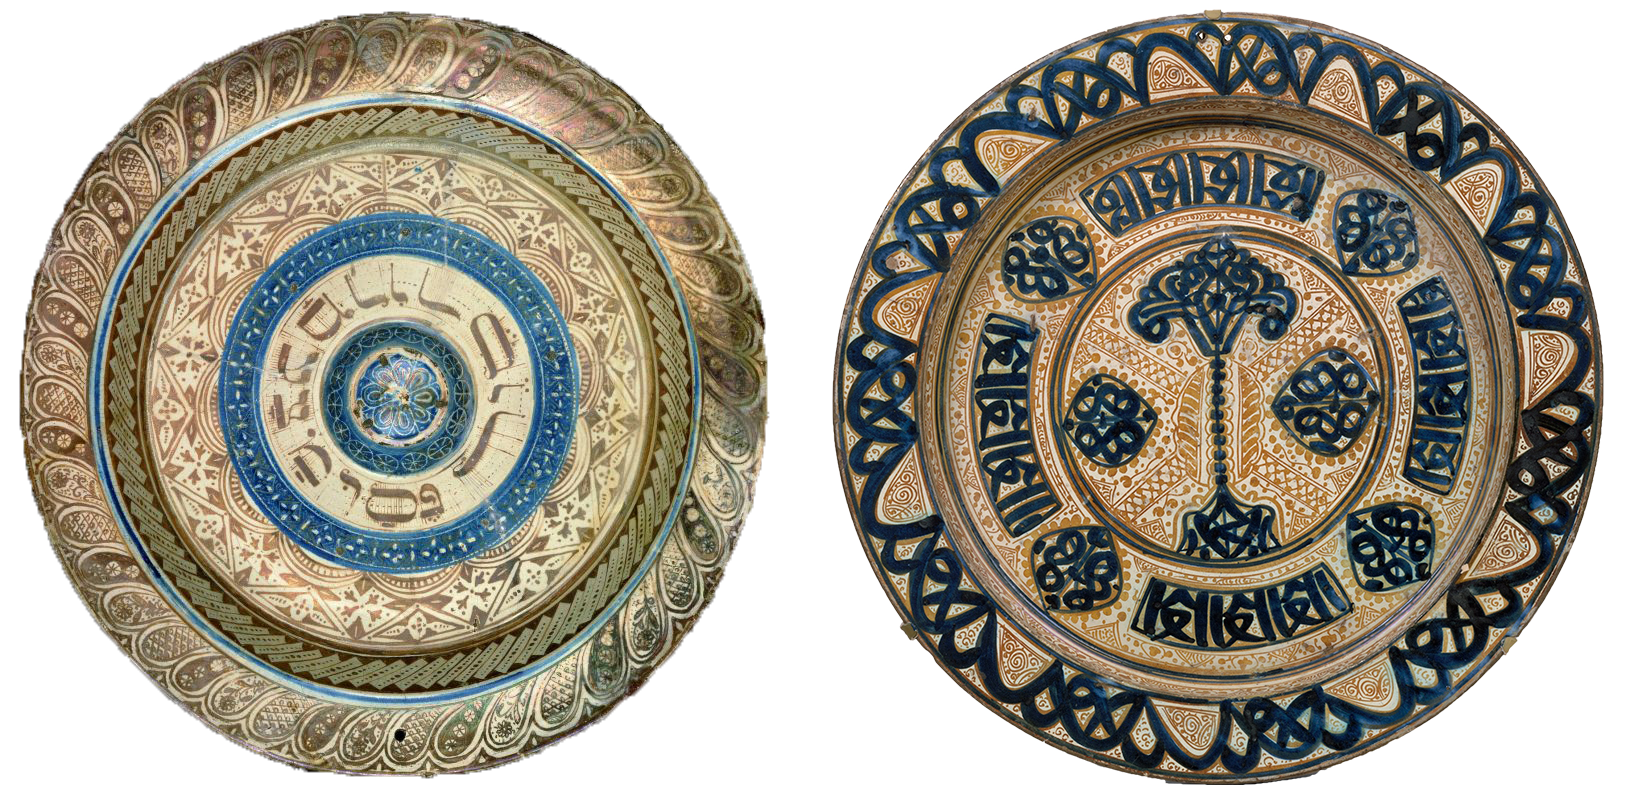 Left: Seder plate, Spain, c. 1480, ceramic lusterware, 57 cm (Israel Museum); right: Deep dish, Valencia, Spain, c. 1430, ceramic lusterware, 45.1 cm (The Metropolitan Museum of Art)